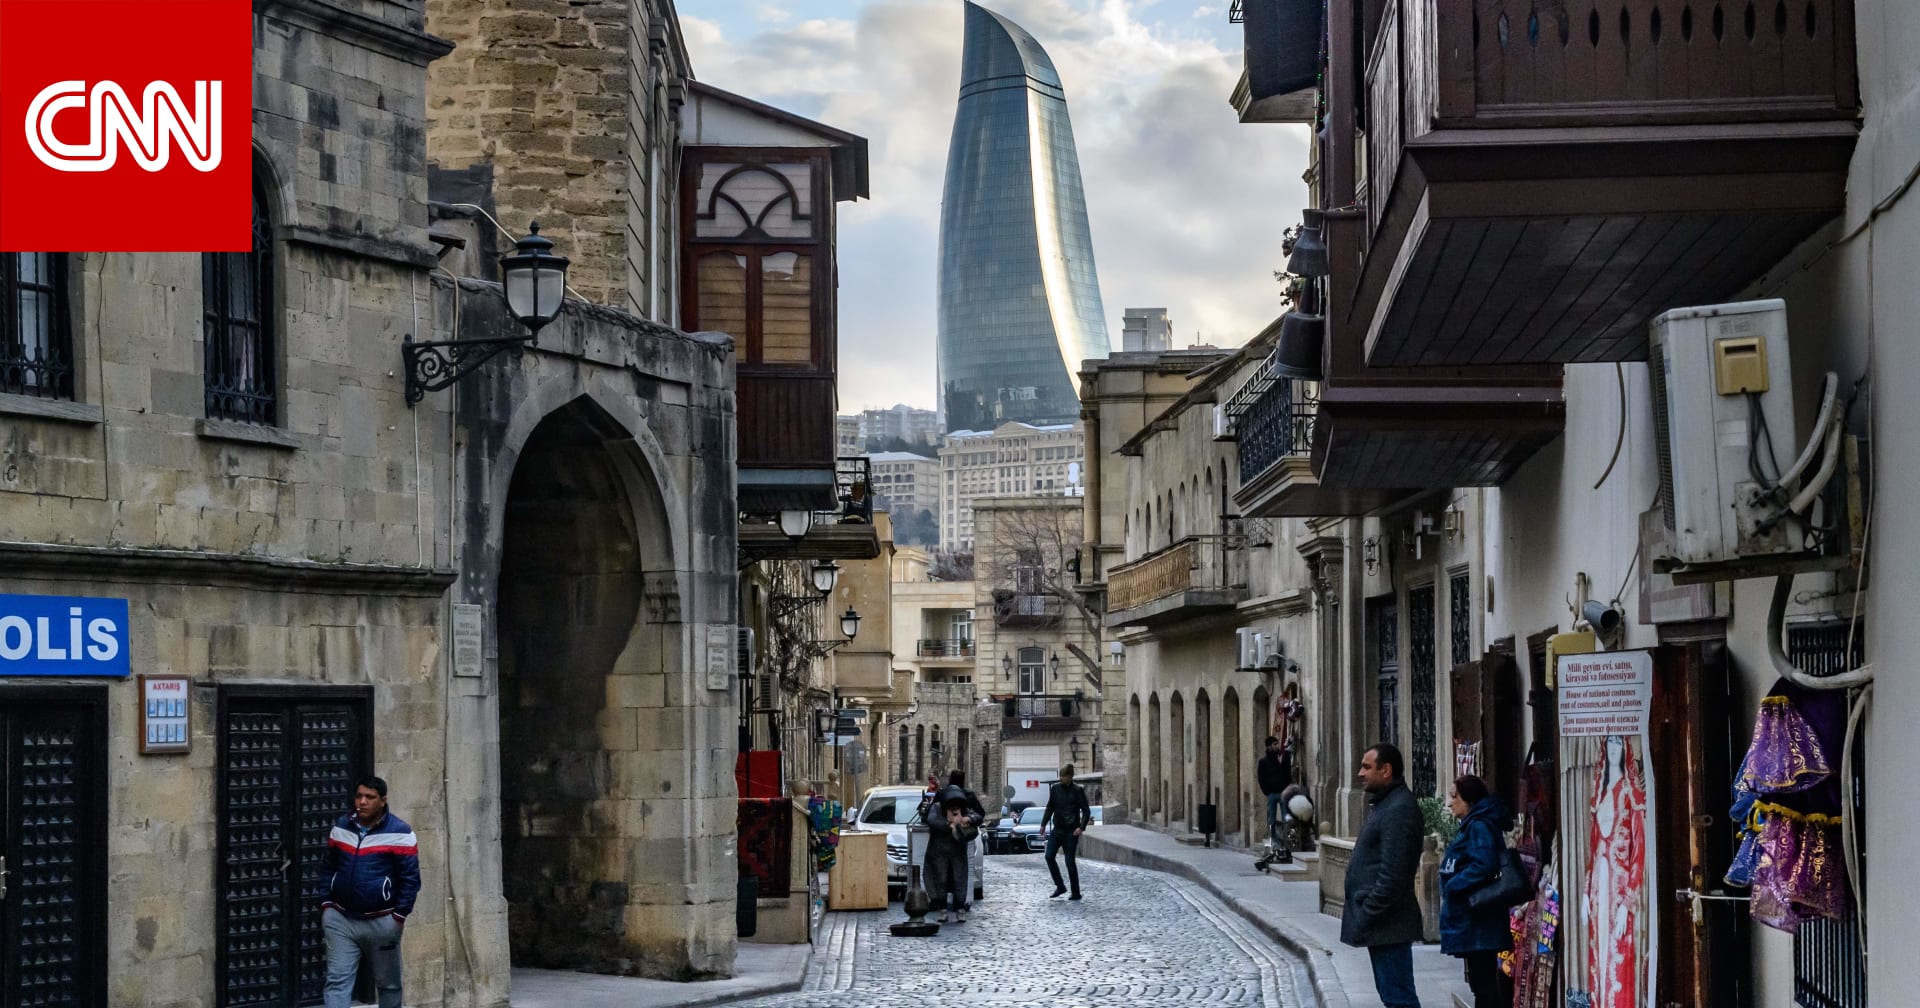 7 نصائح يجب معرفتها قبل السفر إلى أذربيجان - CNN Arabic